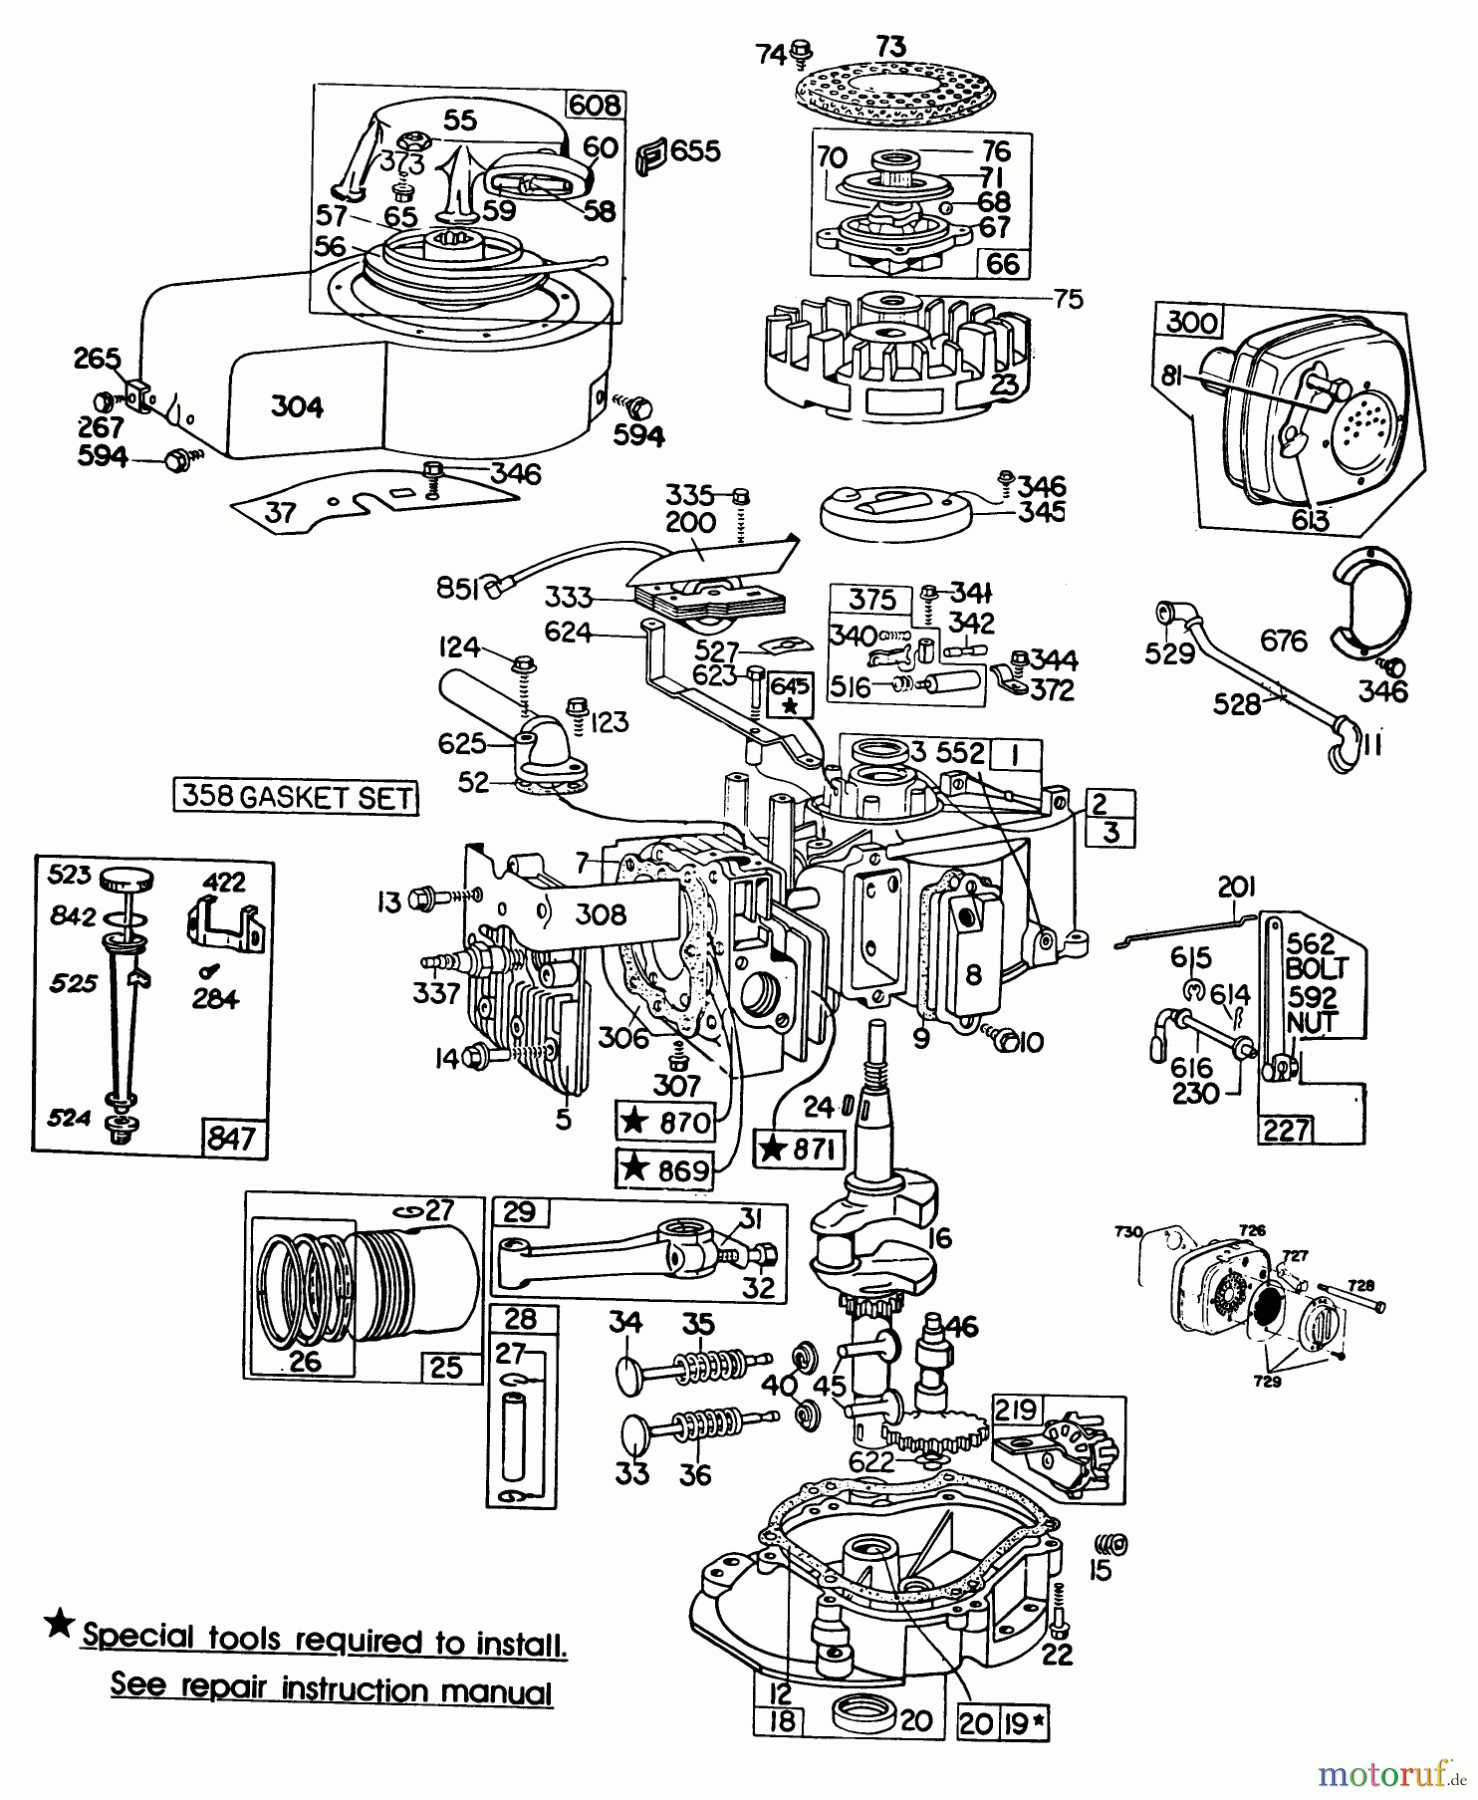  Toro Neu Mowers, Walk-Behind Seite 2 23158 - Toro Lawnmower, 1980 (0000001-0999999) ENGINE BRIGGS & STRATTON MODEL 130902-0543-01 #1